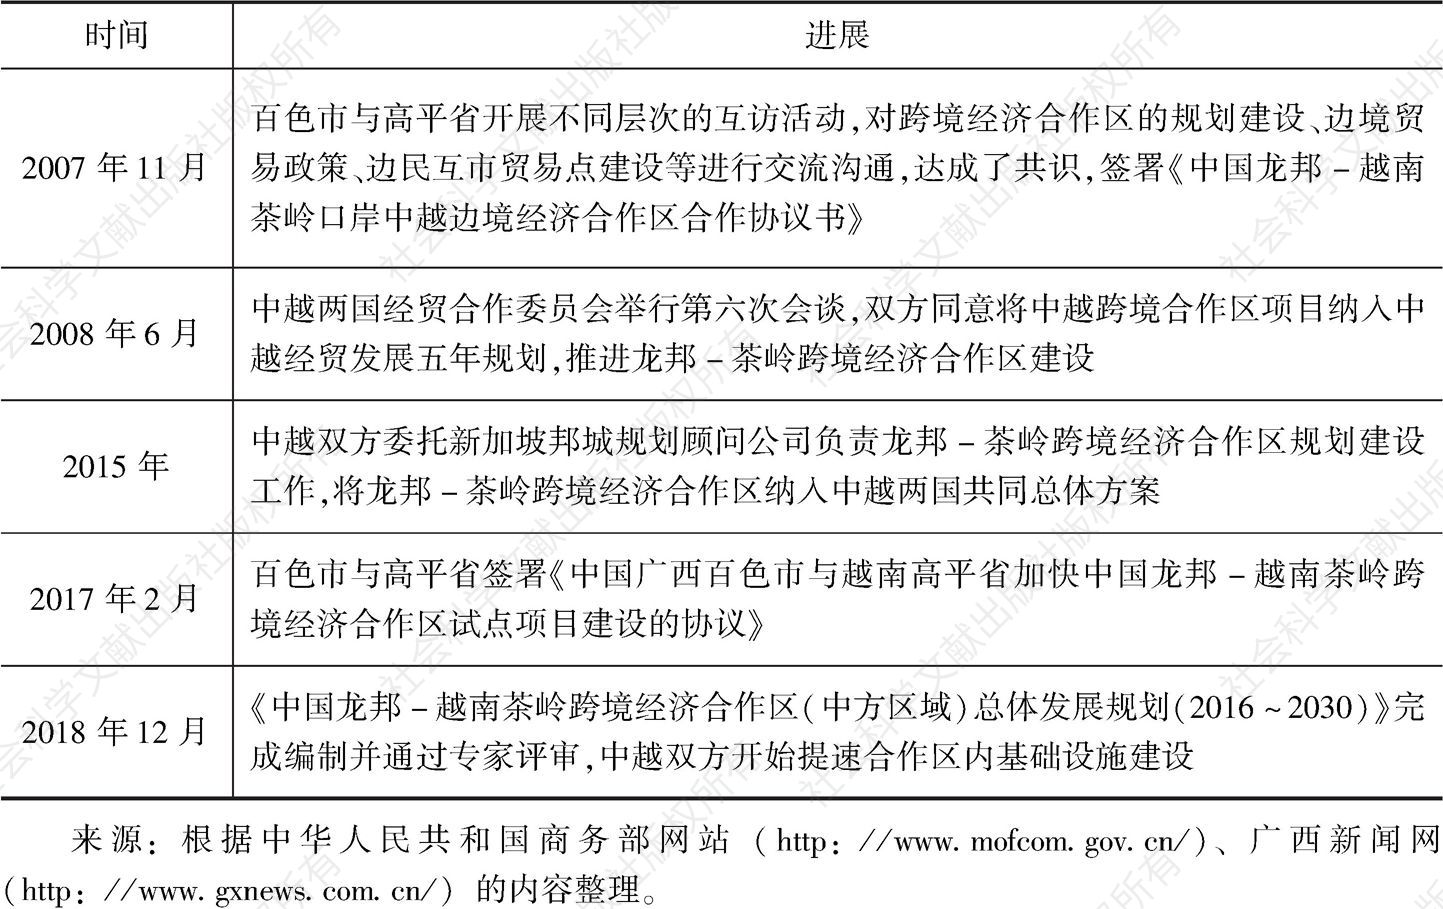 表4 中国龙邦-越南茶岭跨境经济合作区建设进展情况